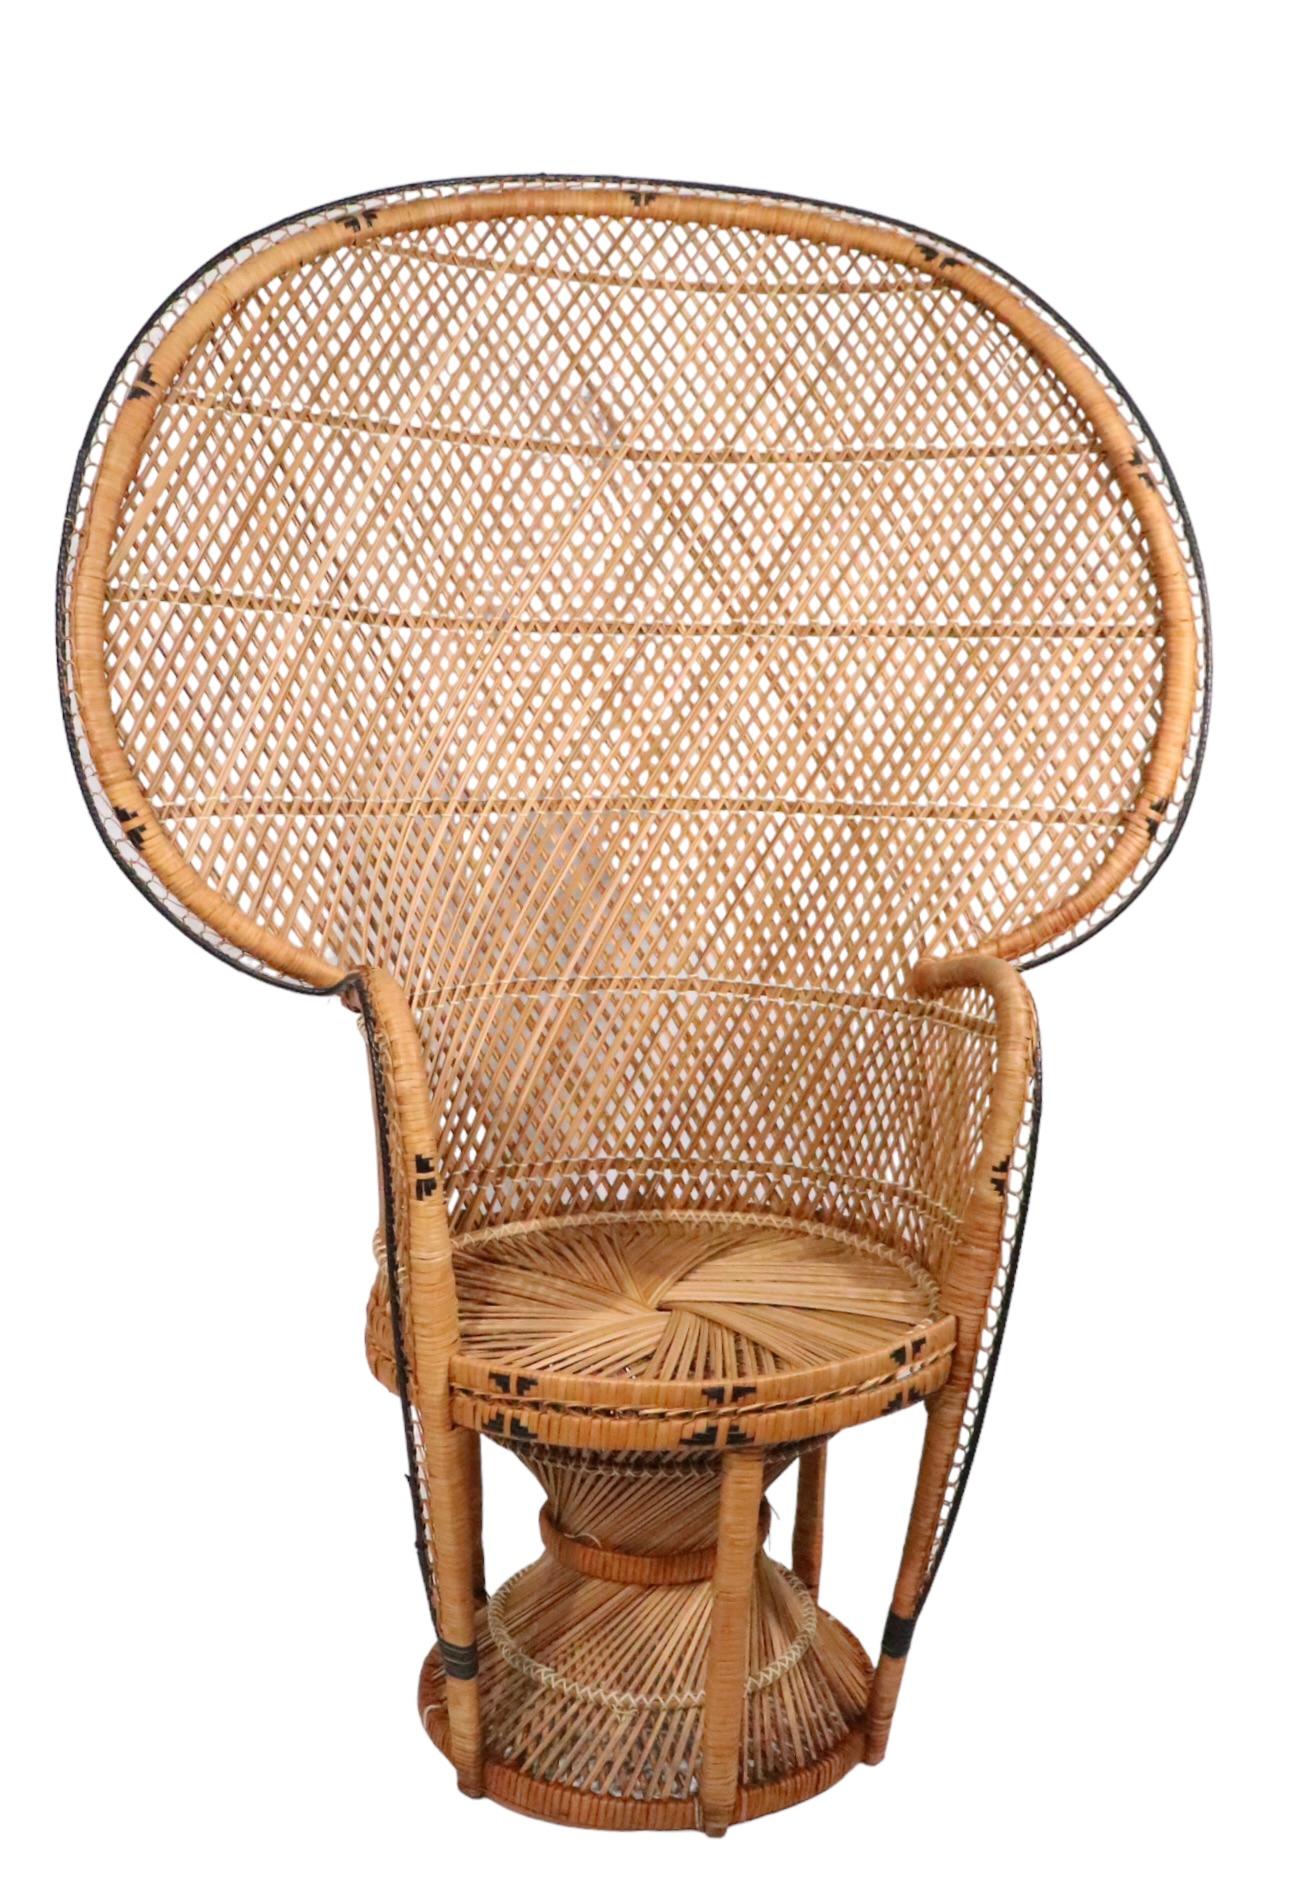 Emmanuelle  Peacock Bamboo Wicker Fan Chair c. 1960/1970's For Sale 4